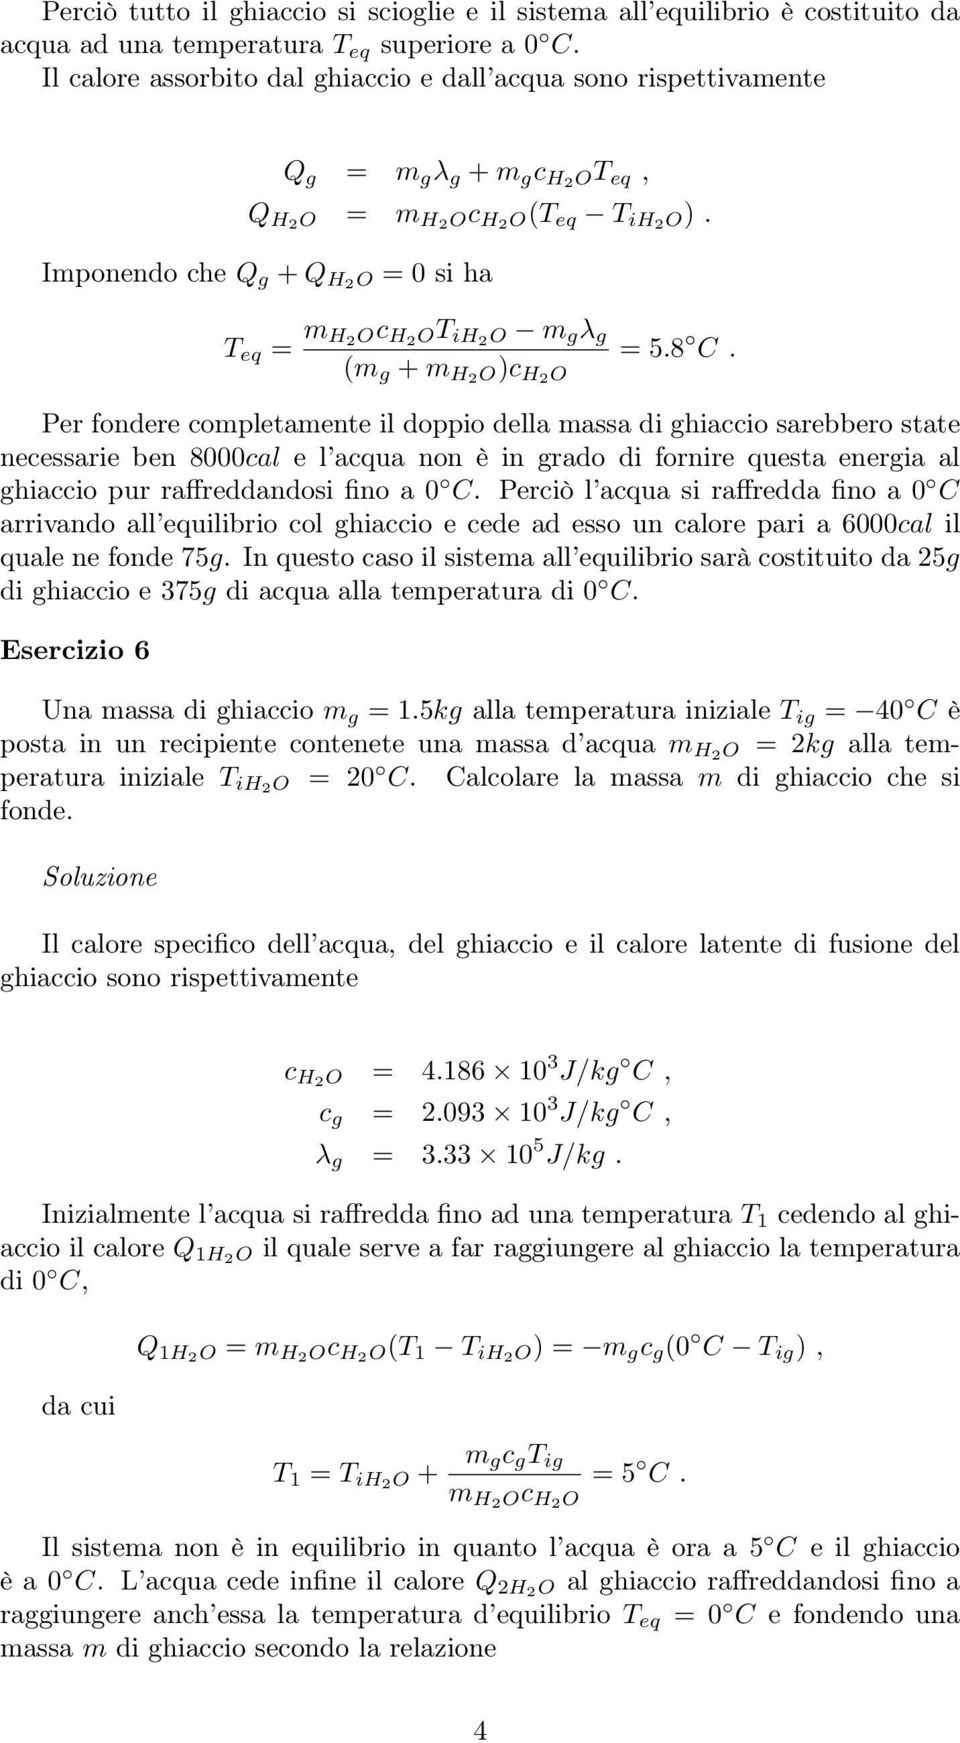 Imponendo che Q g + Q H2O = 0 si ha T eq = m H 2Oc H2OT ih2o m g λ g (m g + m H2O)c H2O = 5.8 C.